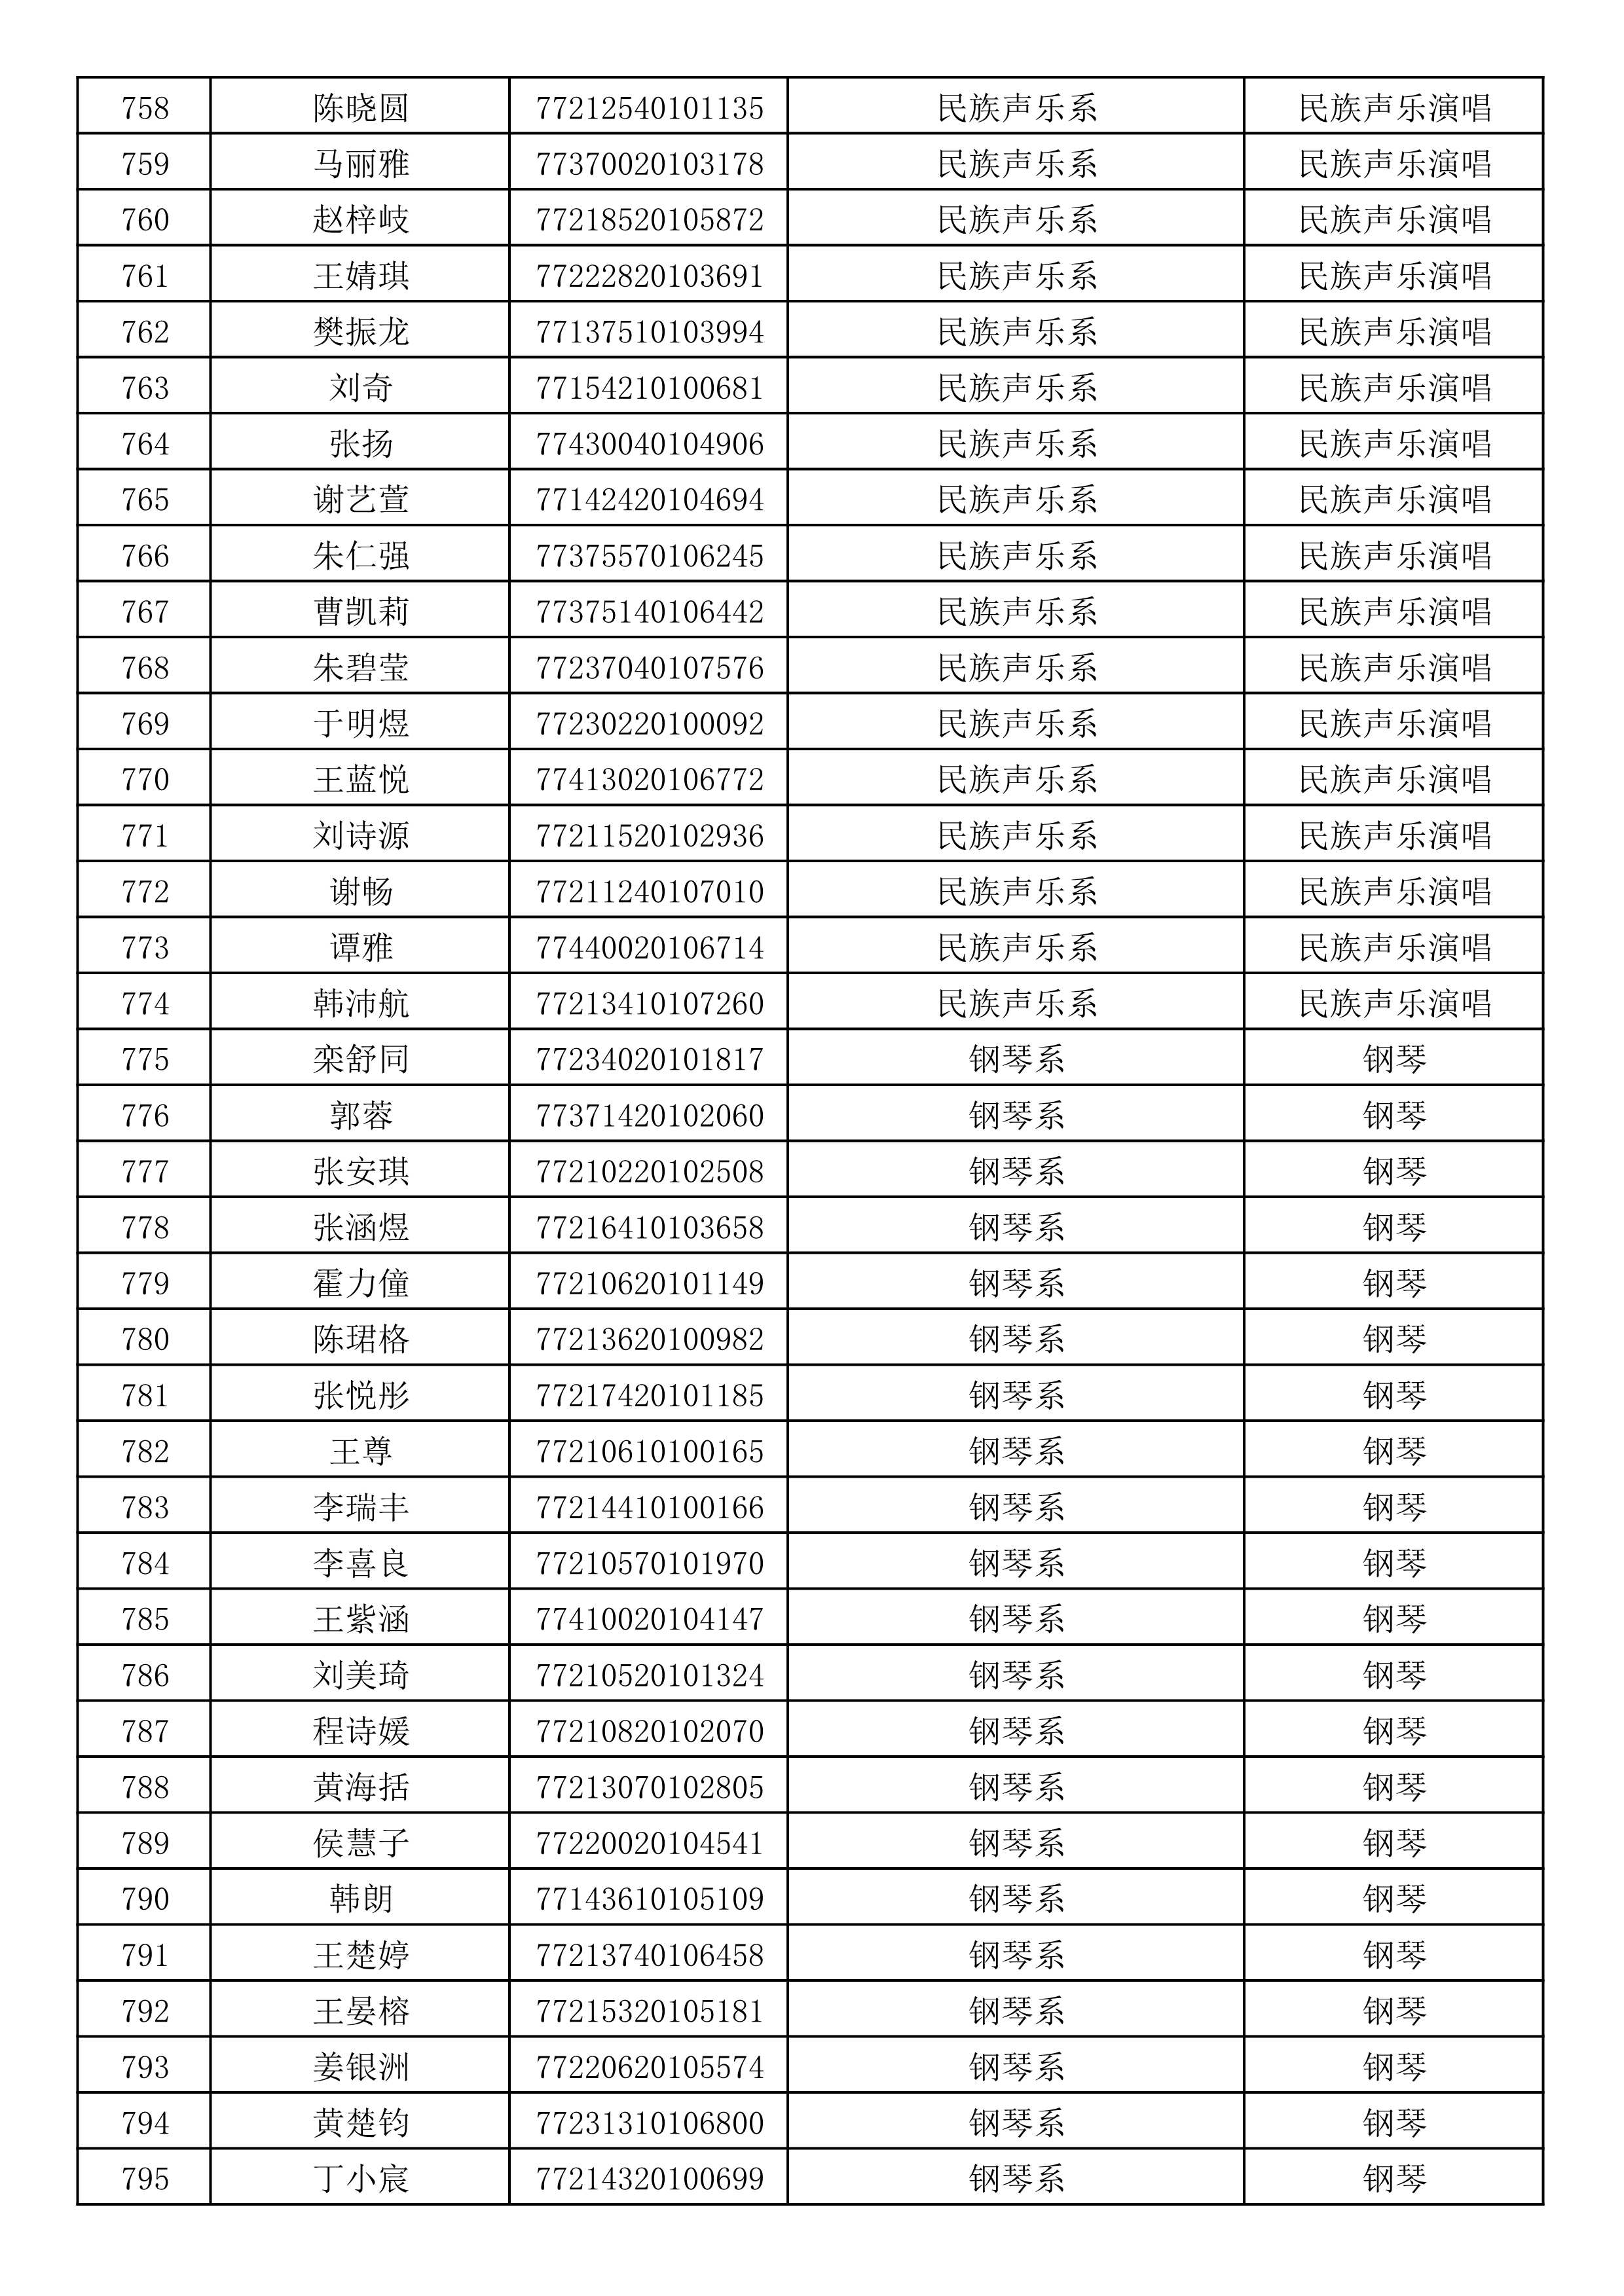 沈阳音乐学院2019年本科招生考试初试合格名单_21.jpg